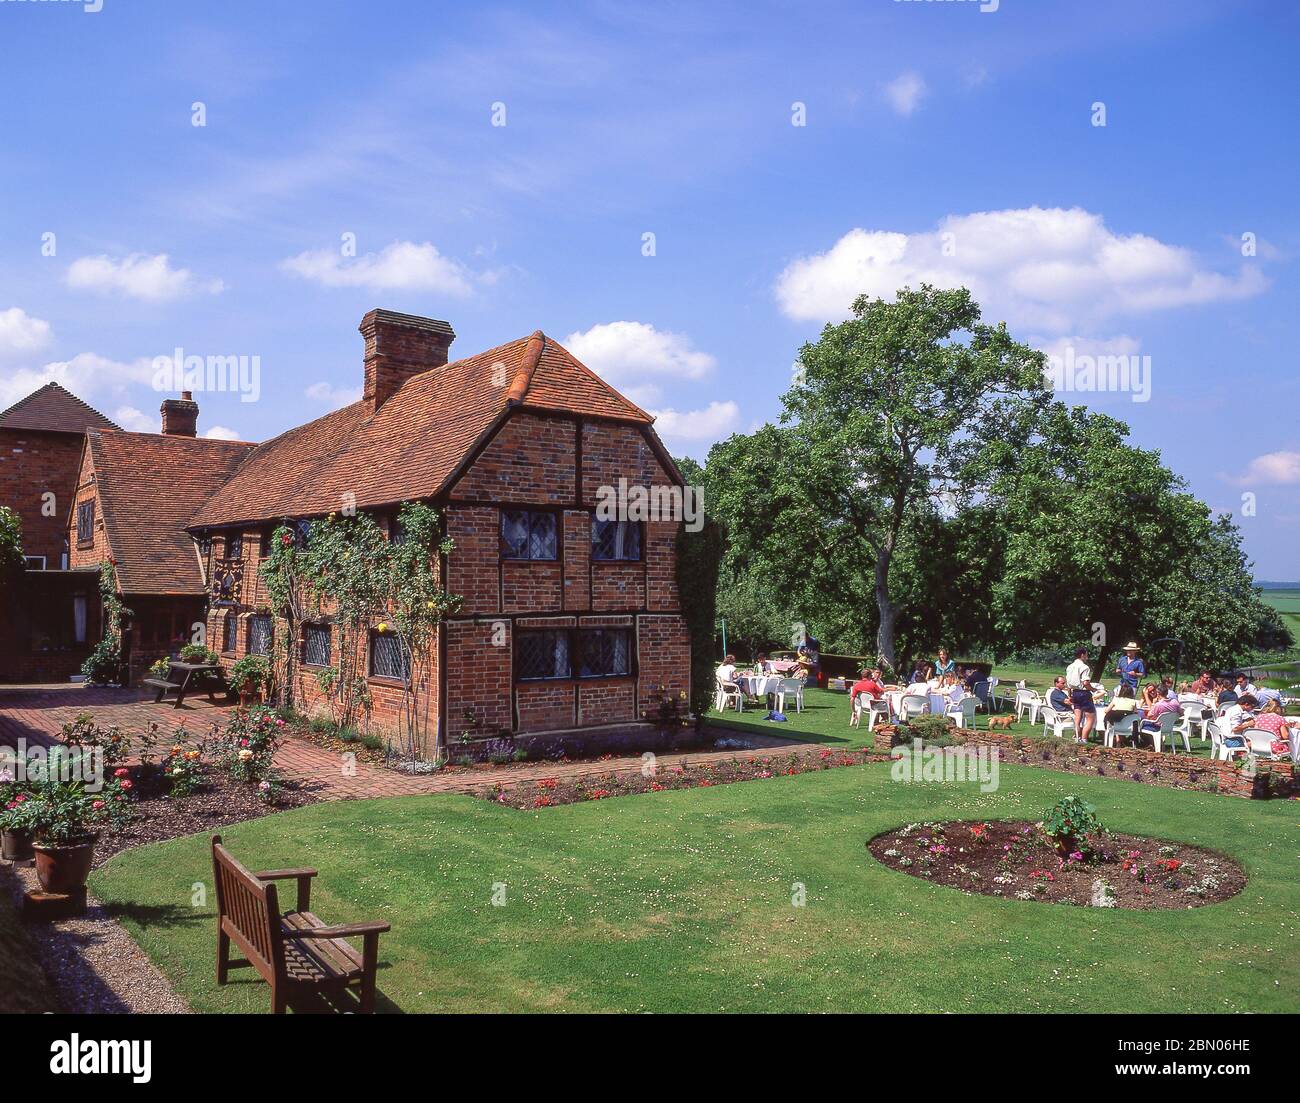 Sommerparty im Landhaus, Shurlock Row, Berkshire, England, Vereinigtes Königreich Stockfoto